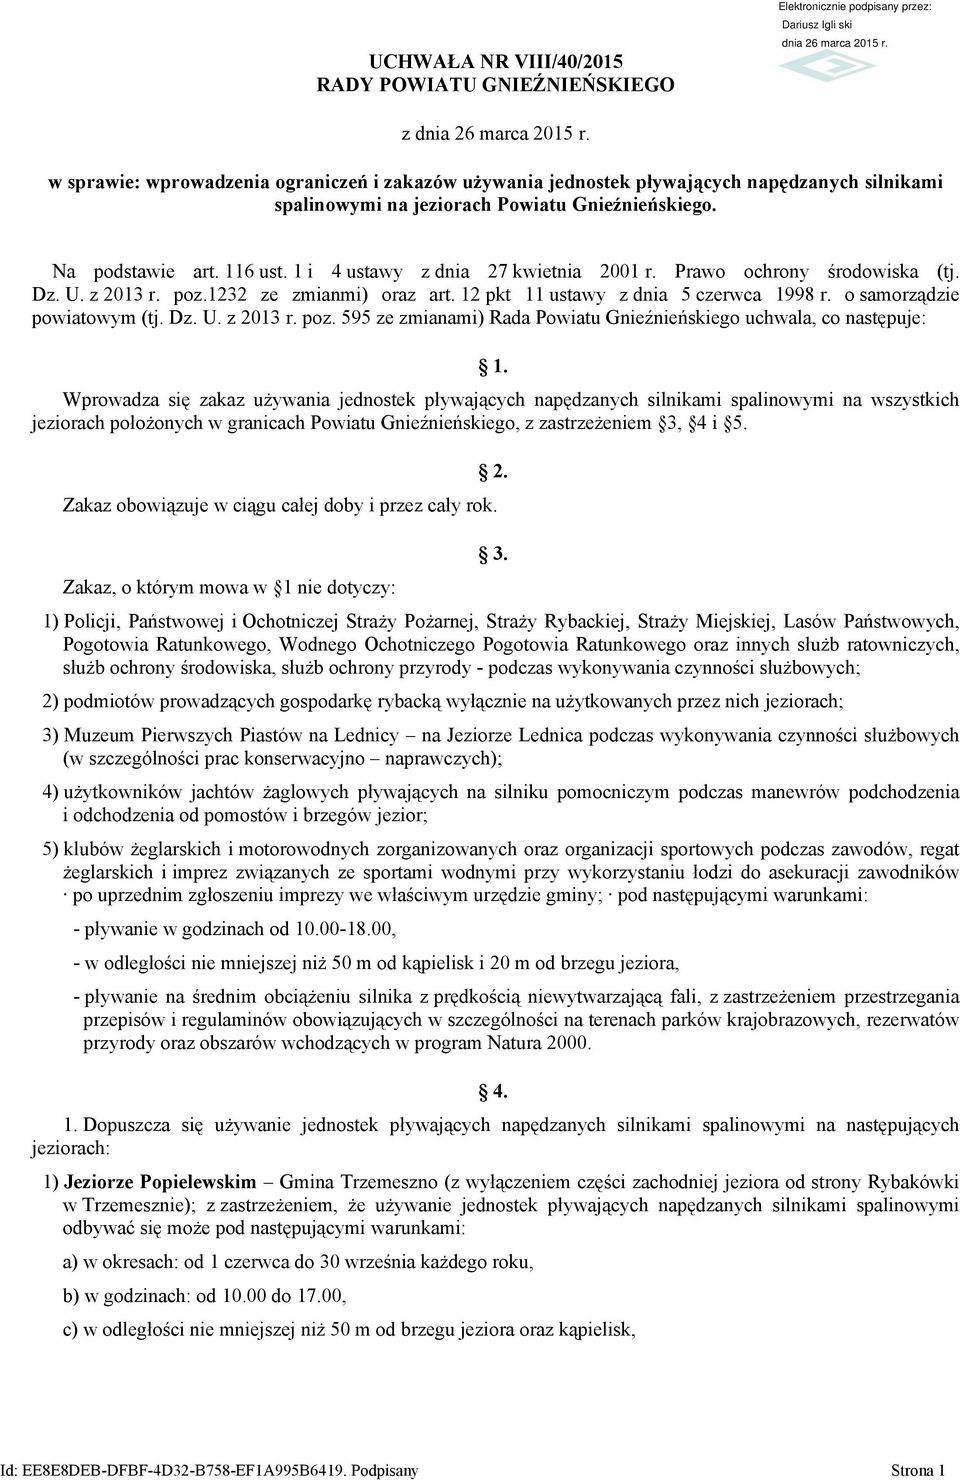 1 i 4 ustawy z dnia 27 kwietnia 2001 r. Prawo ochrony środowiska (tj. Dz. U. z 2013 r. poz.1232 ze zmianmi) oraz art. 12 pkt 11 ustawy z dnia 5 czerwca 1998 r. o samorządzie powiatowym (tj. Dz. U. z 2013 r. poz. 595 ze zmianami) Rada Powiatu Gnieźnieńskiego uchwala, co następuje: 1.